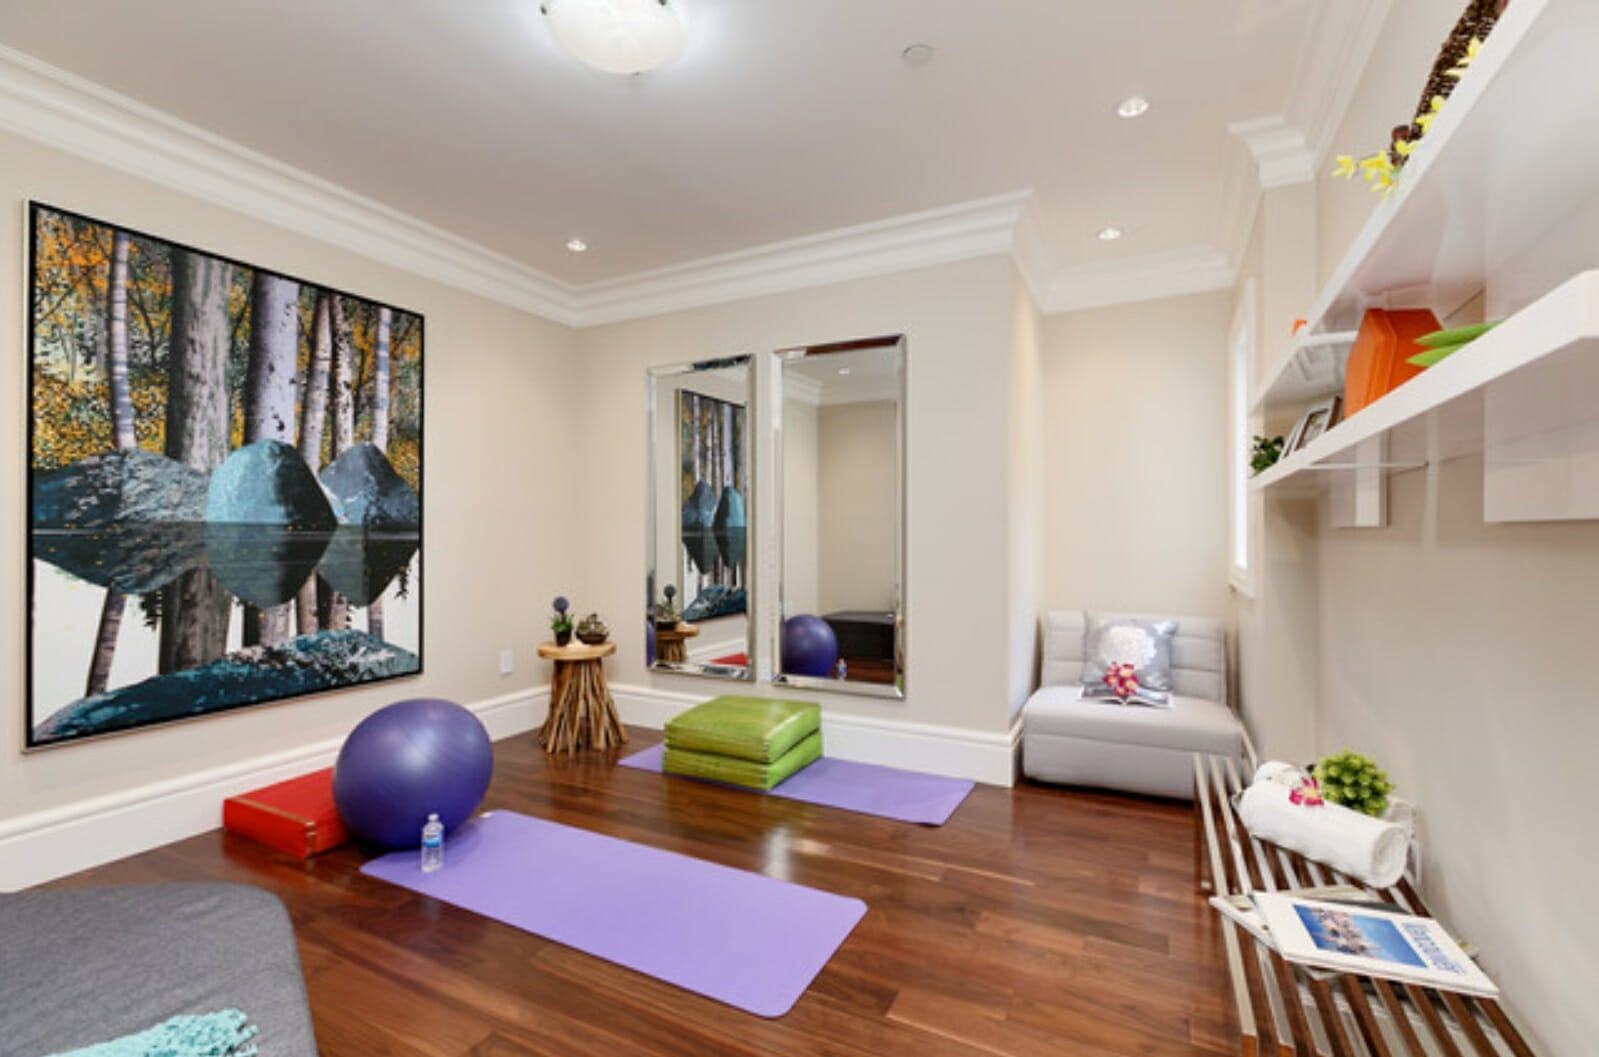 living room yoga sessions login